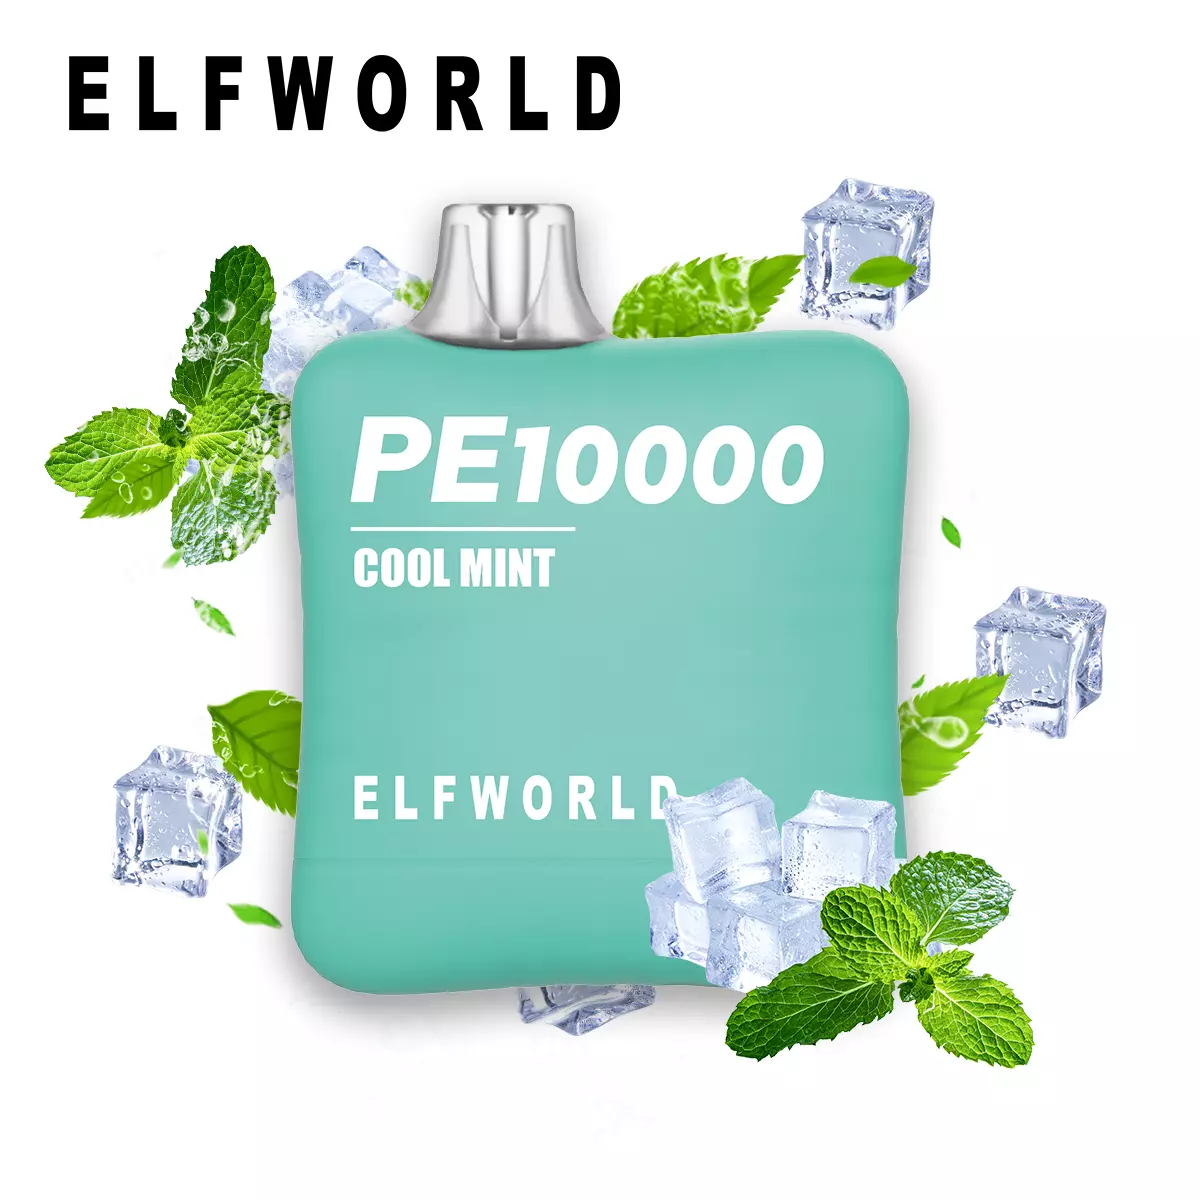 Elf World PE 10000 Cool Mint